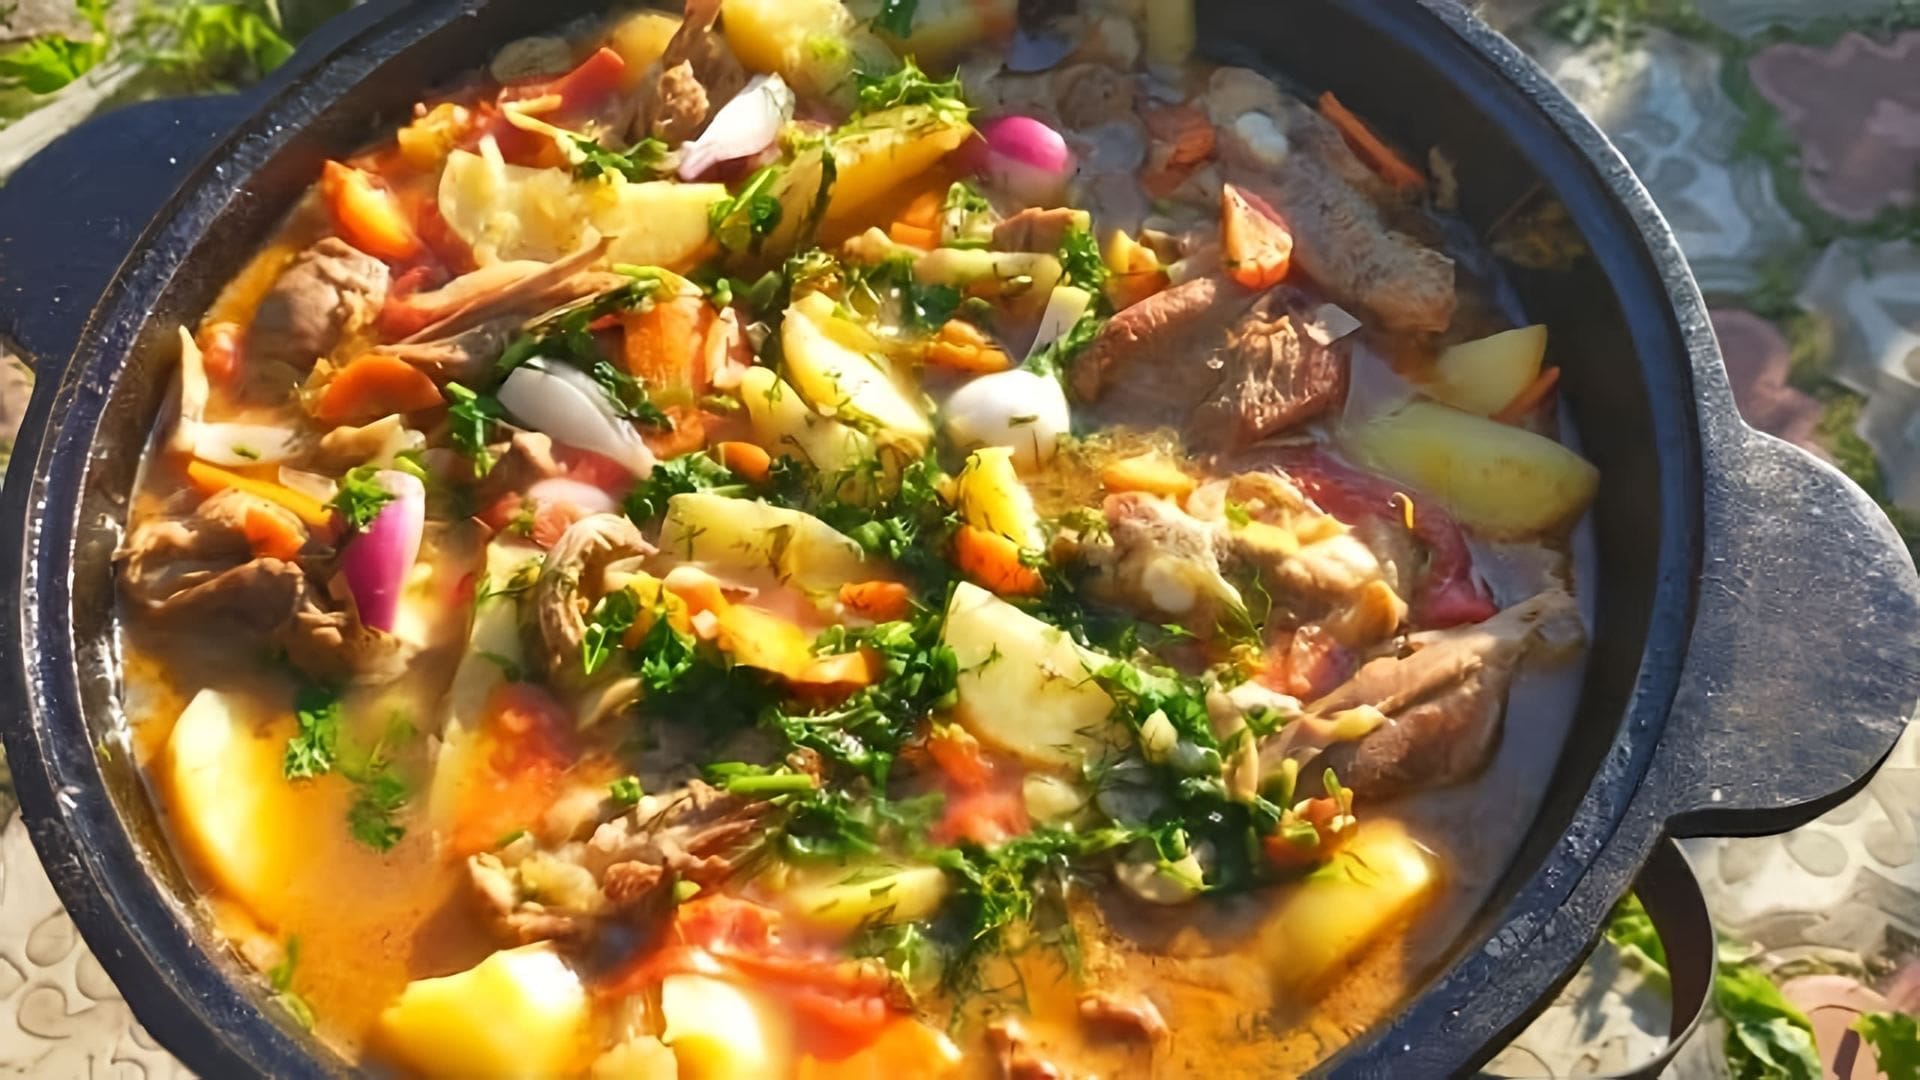 Видео как приготовить сытный рагу из картофеля, мяса и грибов, готовящееся в котле над открытым огнем